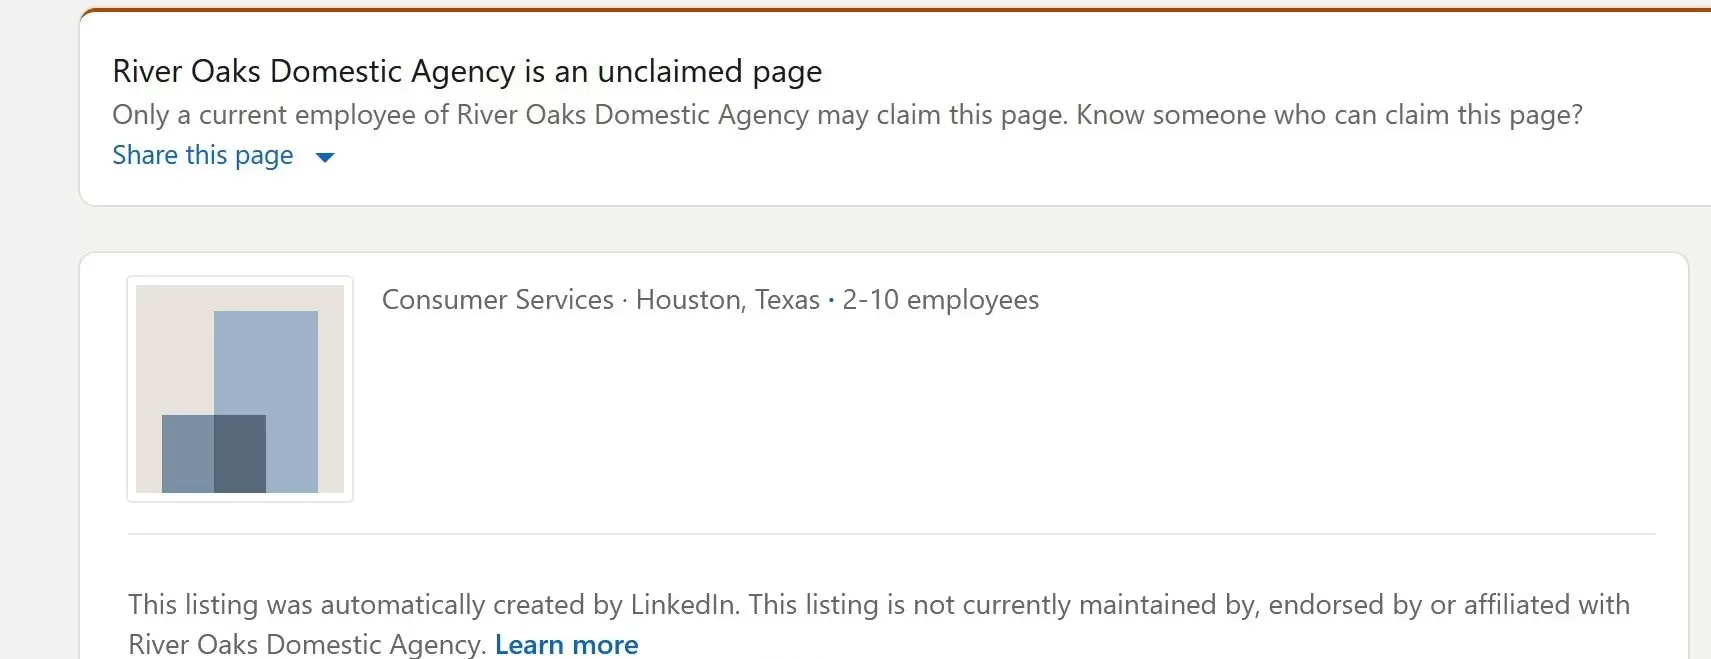 River Oaks Domestic Agency on LinkedIn